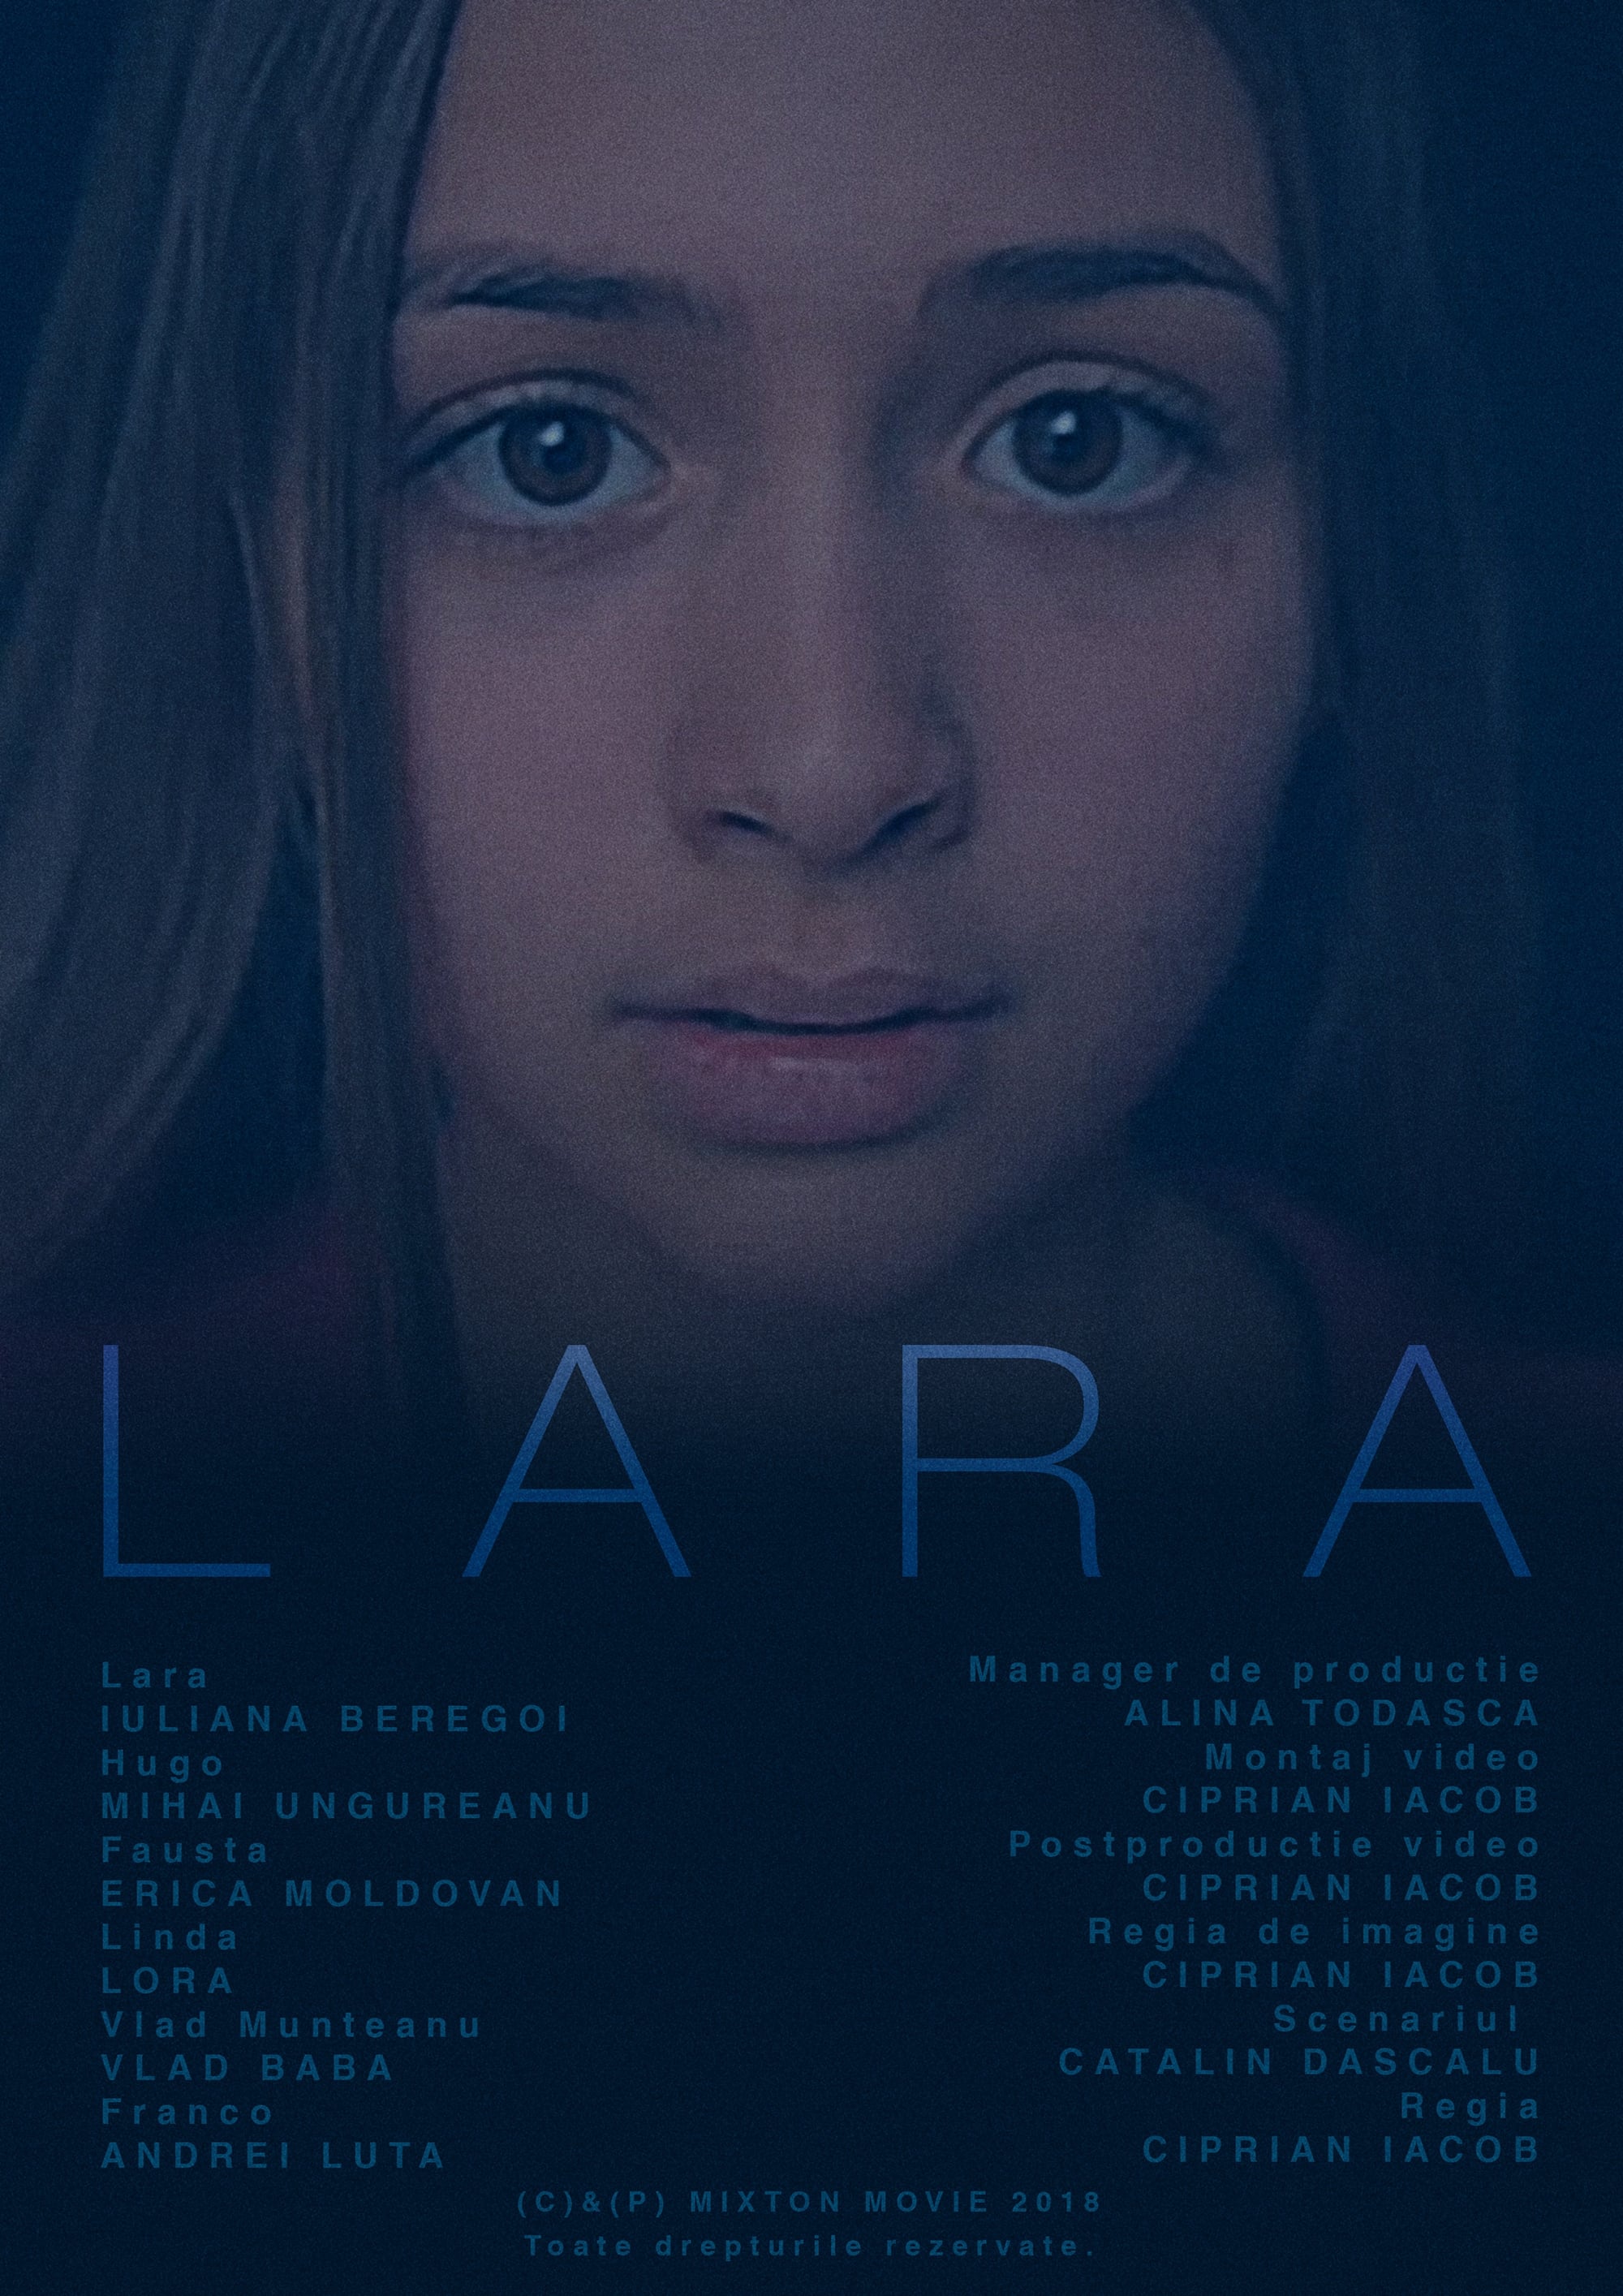 Lara